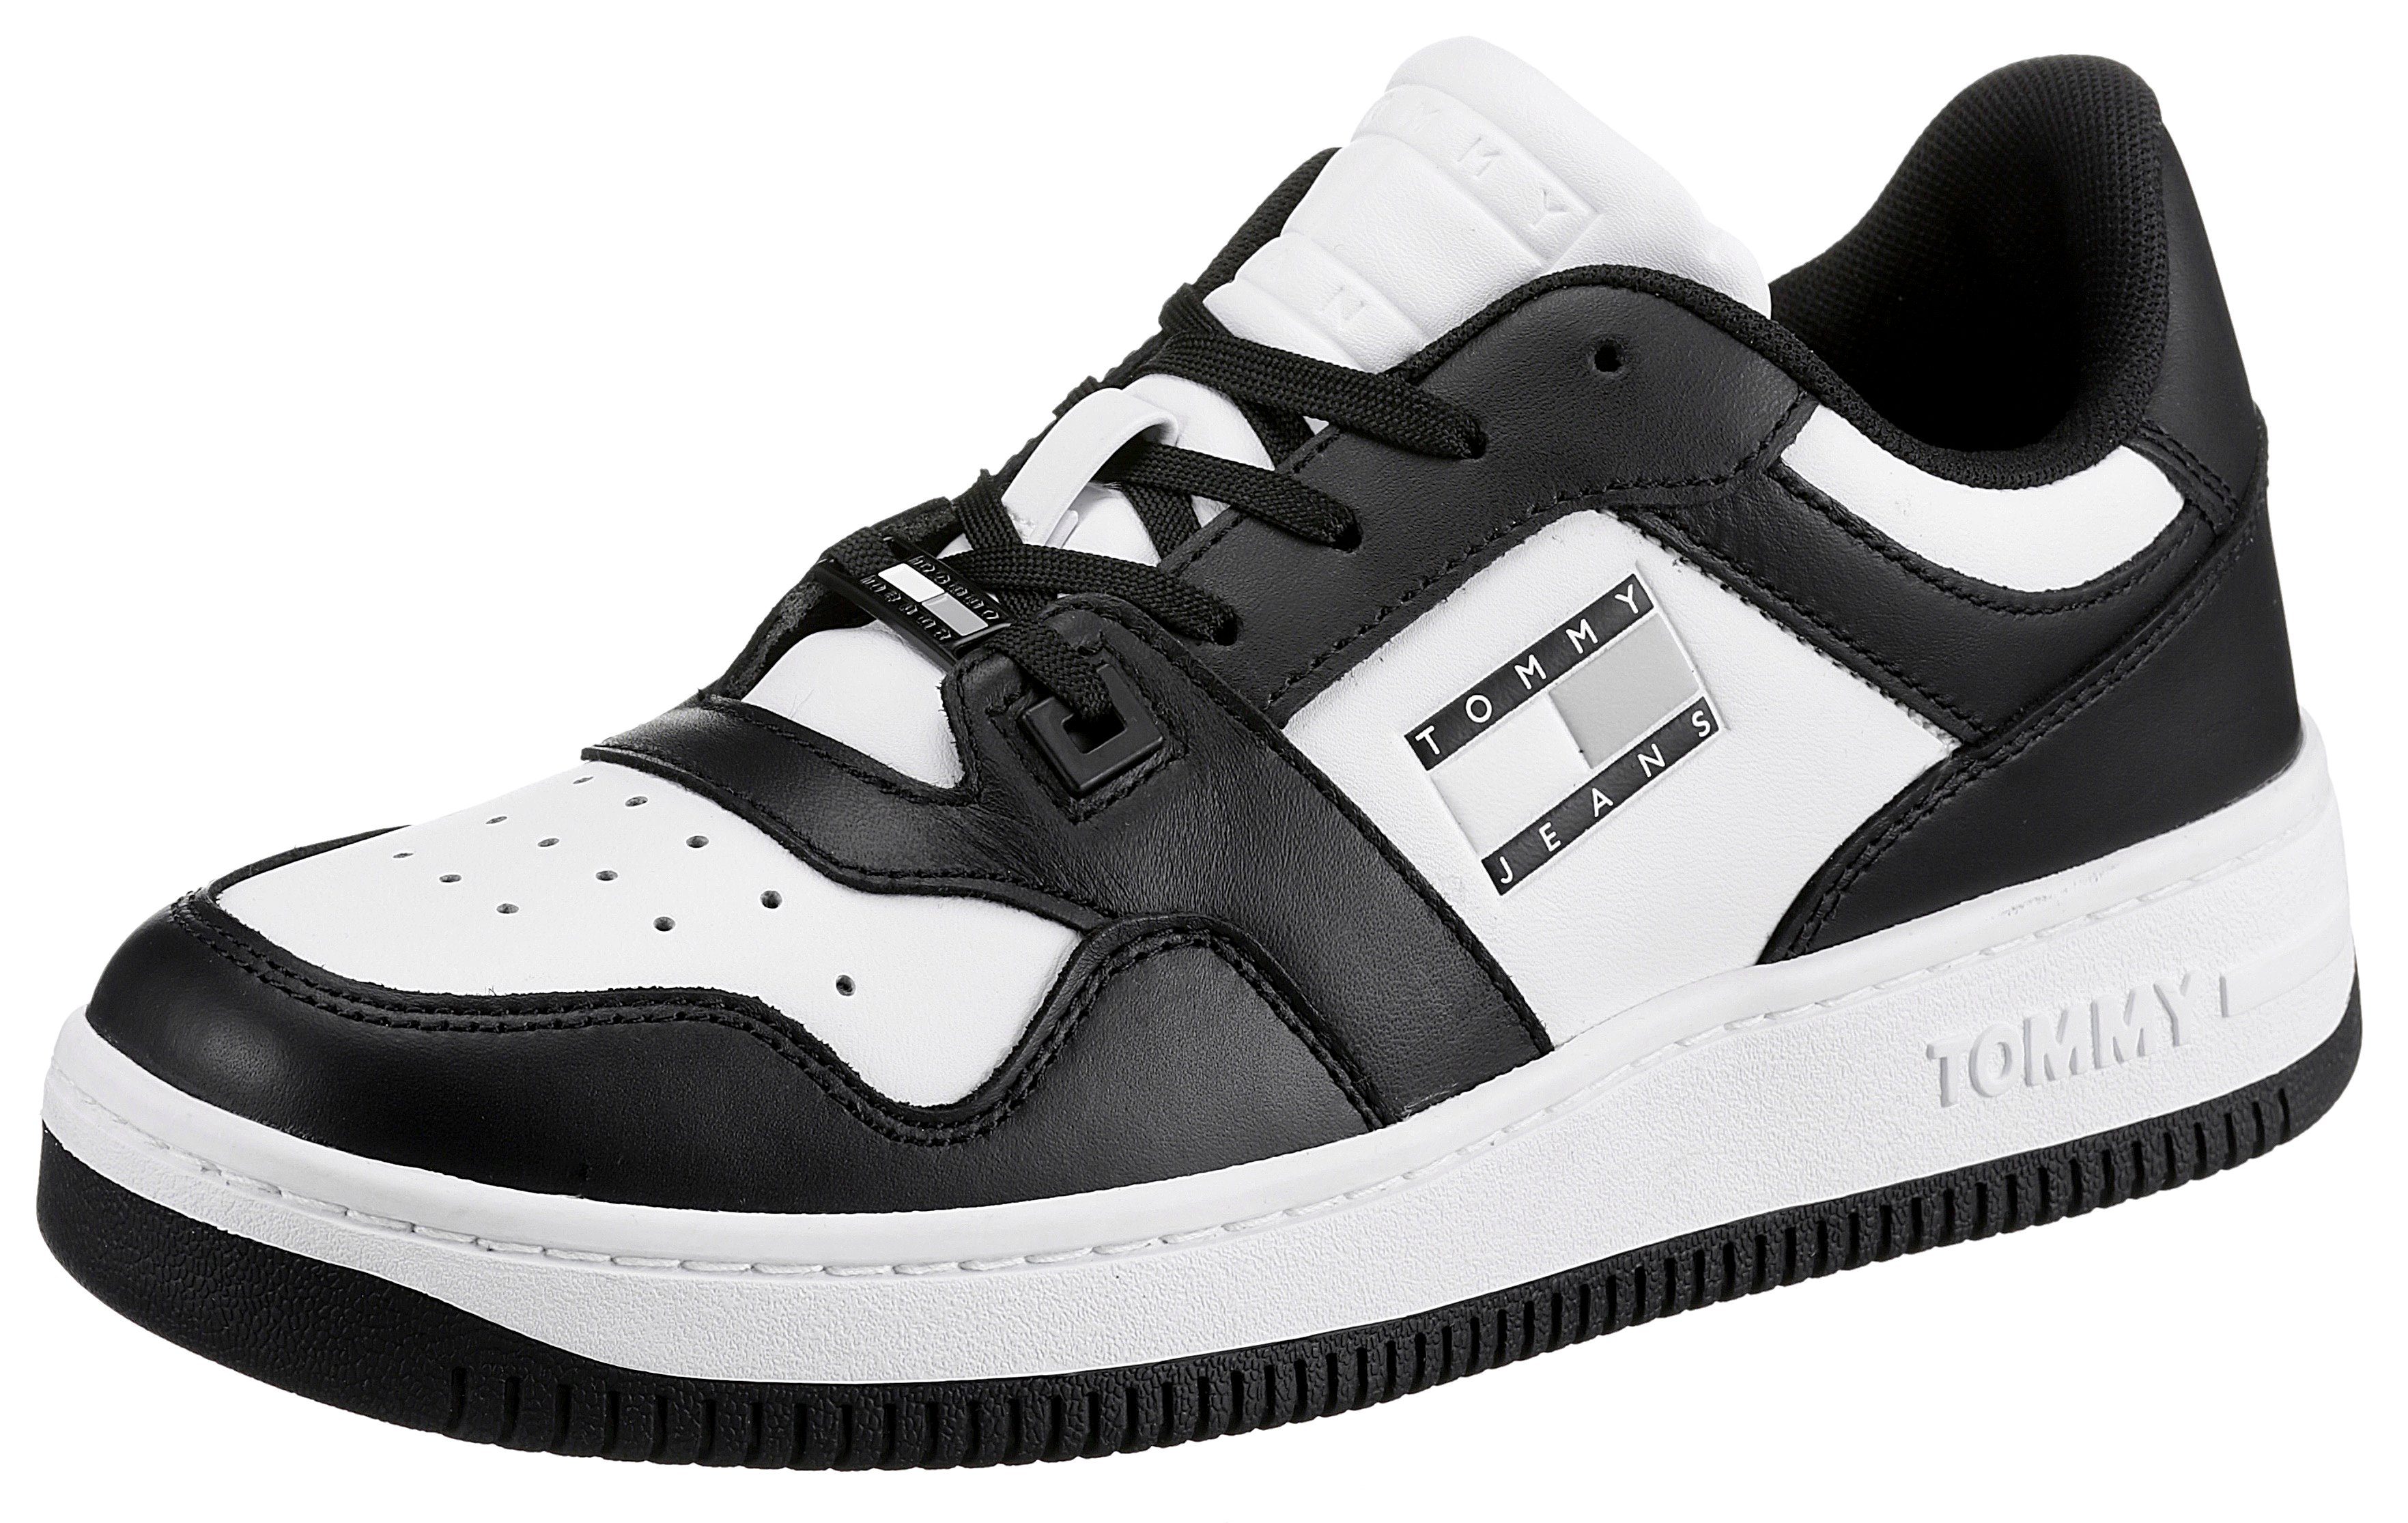 Tommy Jeans TOMMY JEANS RETRO WMN LOW FANCY Keilsneaker im two-tone Look, in Schuhweite E (schmal) schwarz-weiß